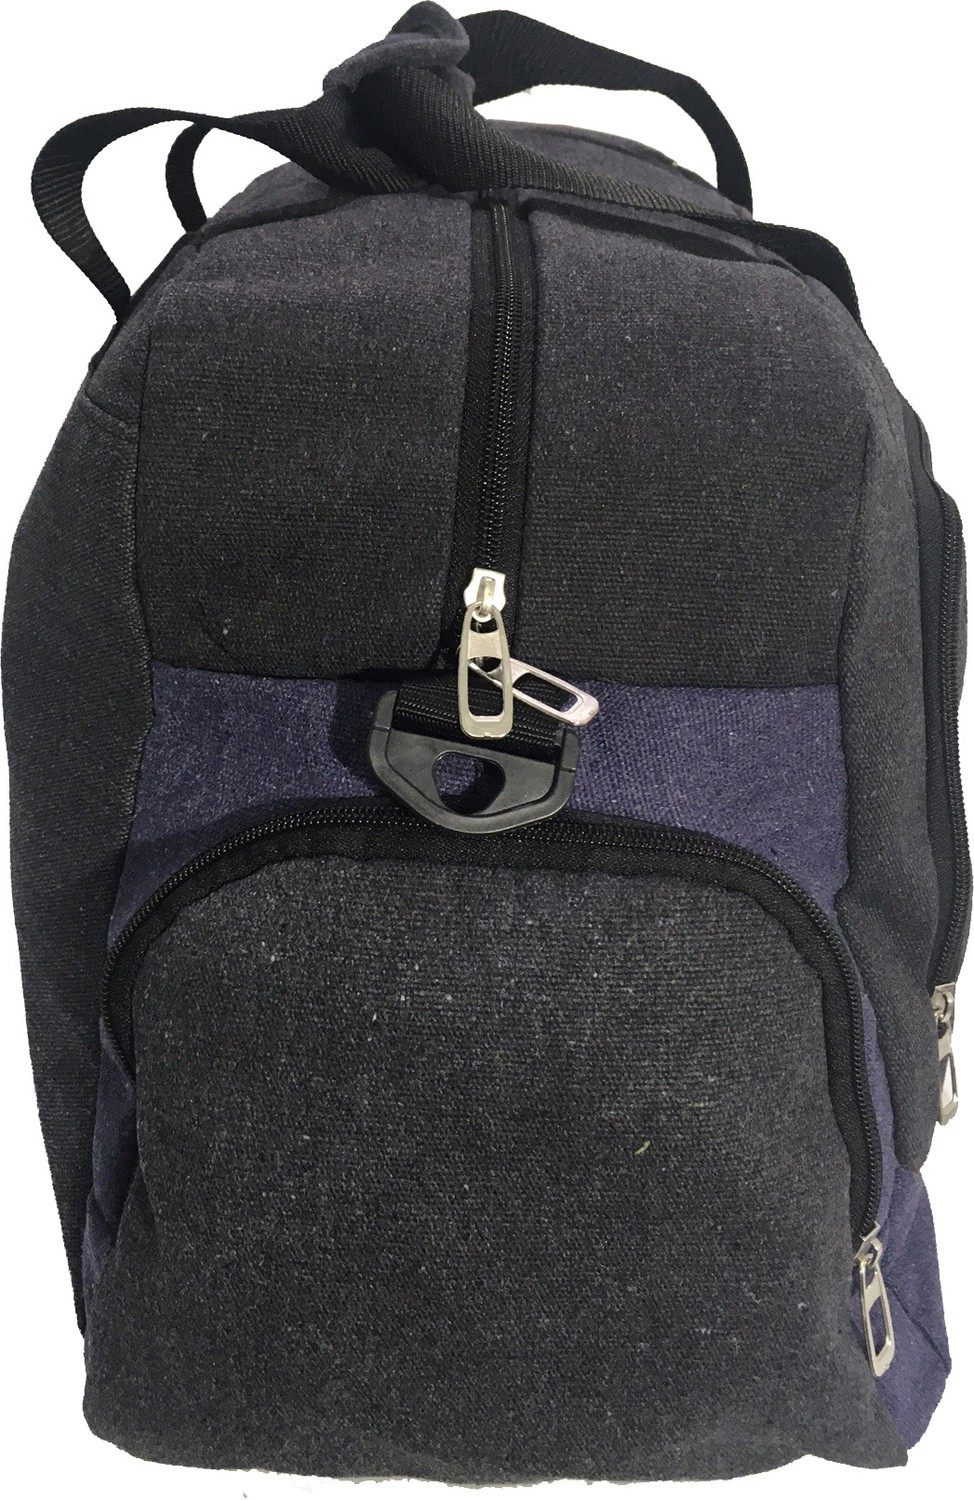 Спортивная холстовая сумка для путешествий и тренировок Newfull среднего размера